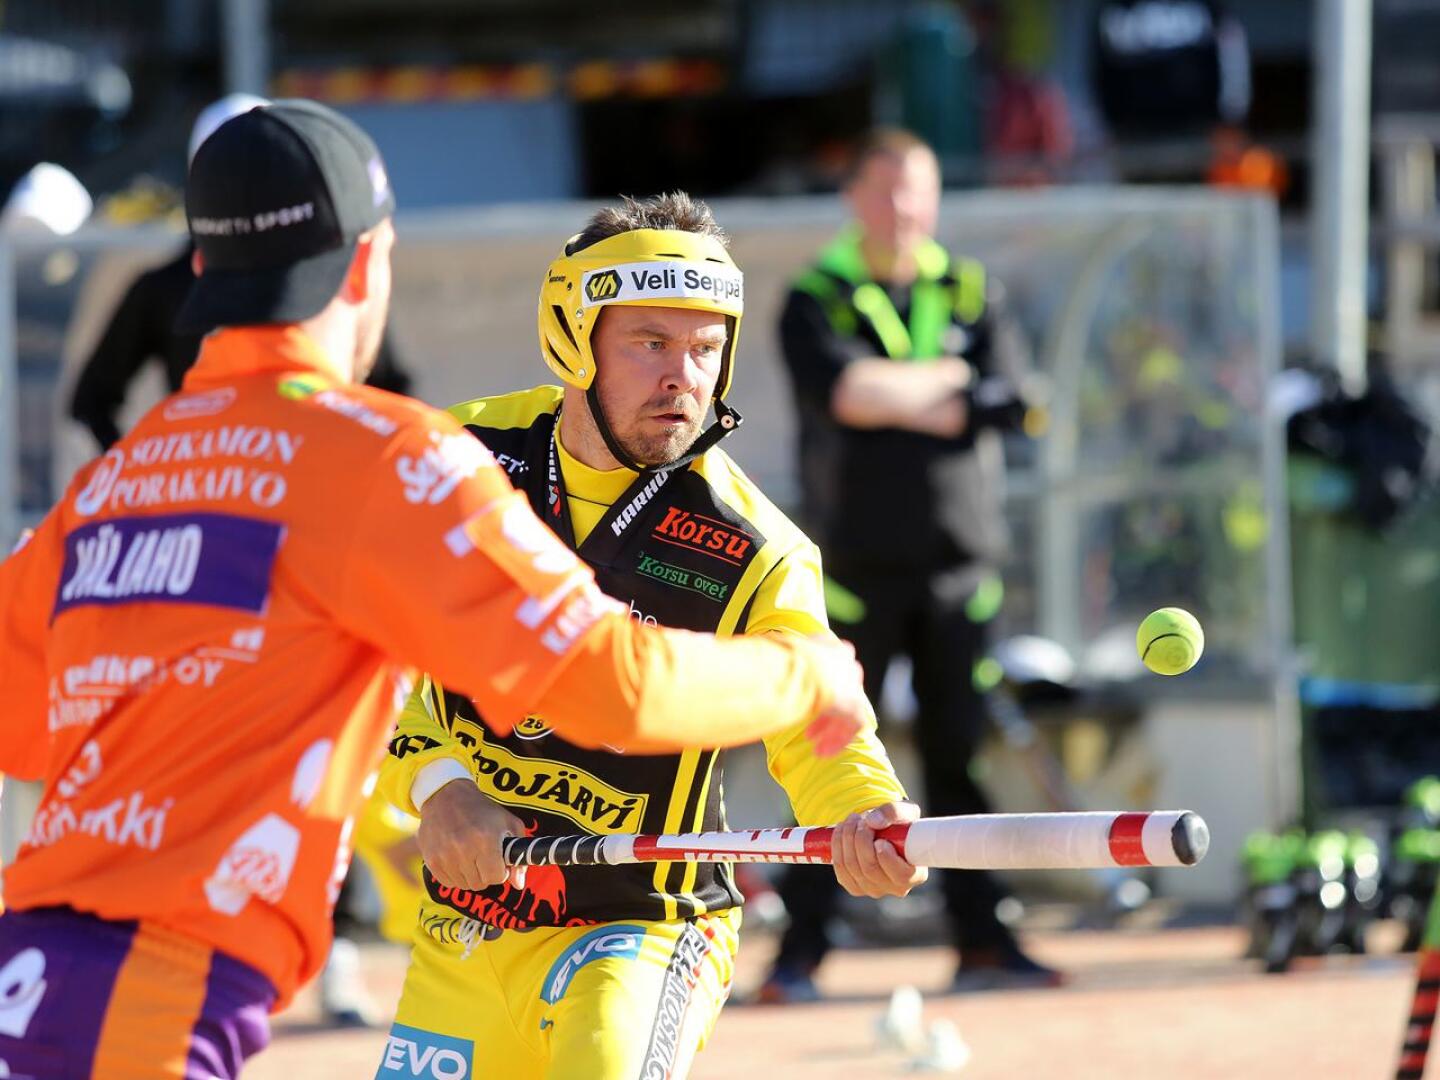 Täksi kaudeksi Pattijoen Urheilijoihin palannut Sami Haapakoski sai perjantaina täyteen 1000 tuotua juoksua Superpesiksen runkosarjassa.